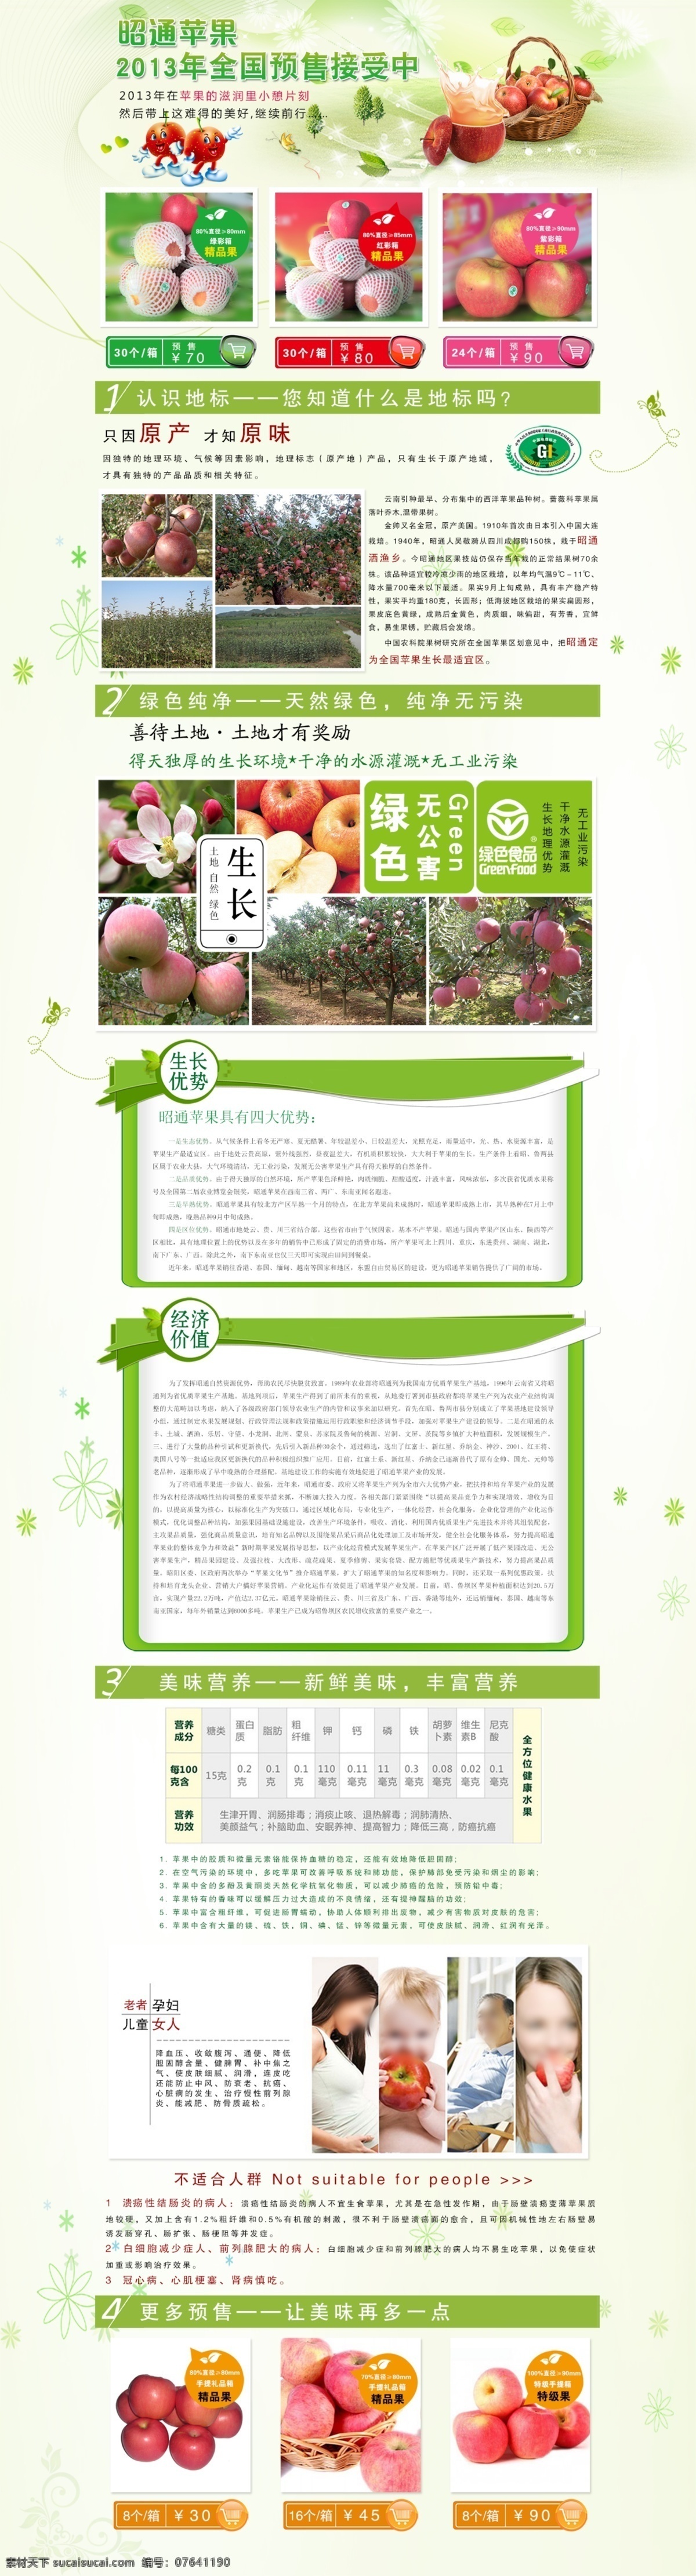 绿色 苹果 食品 水果 网页 网页模板 网页模版 源文件 昭通 专题 模板下载 昭通苹果专题 中文模板